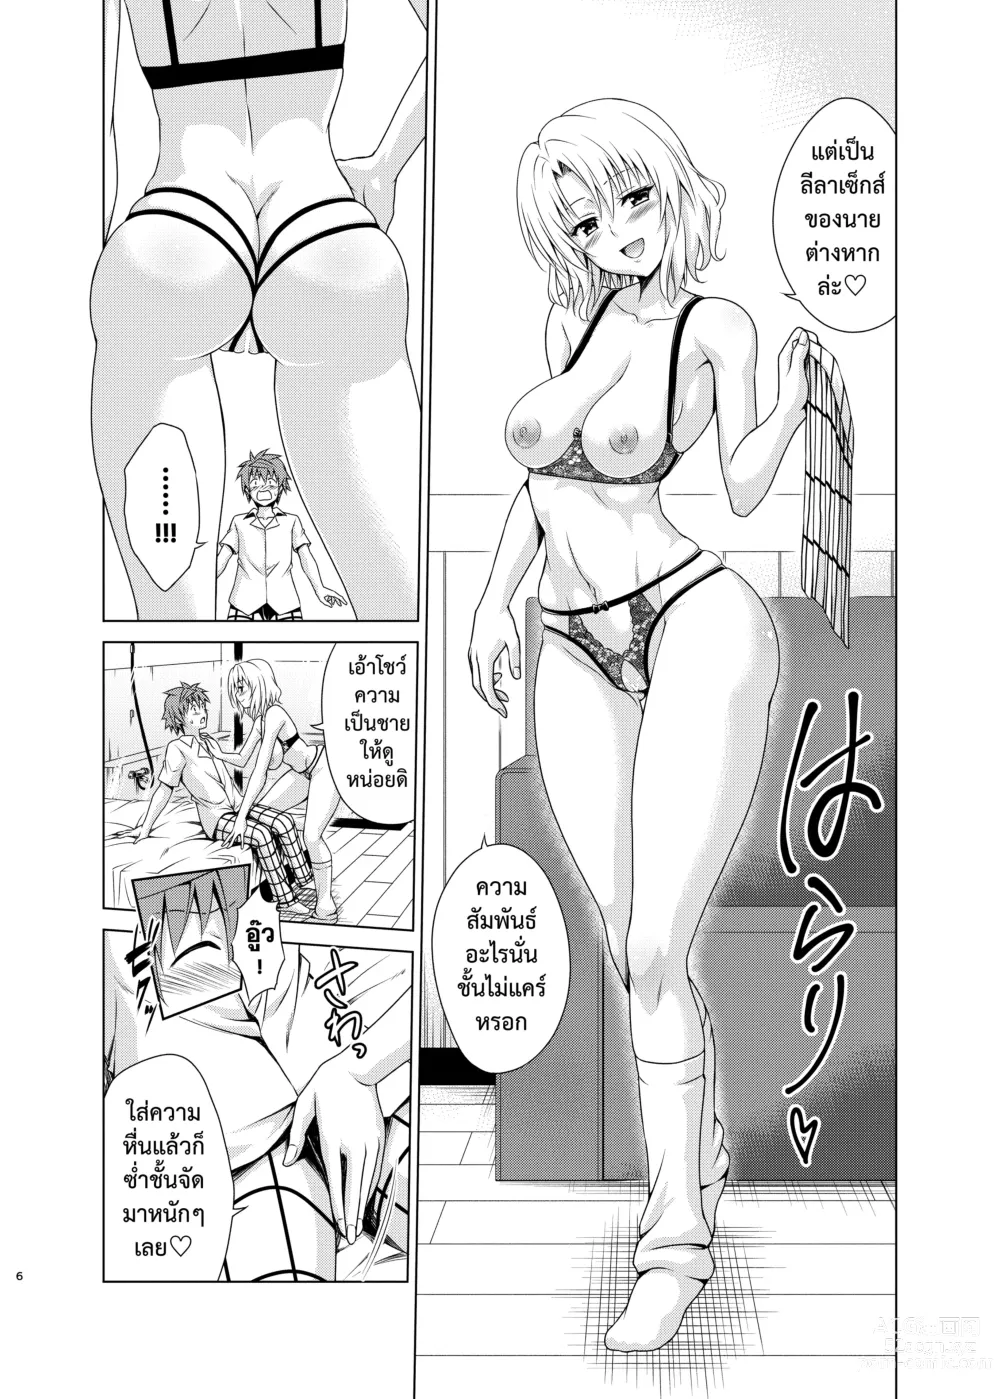 Page 5 of doujinshi ยุทธการฮาเร็ม RX เล่ม.3